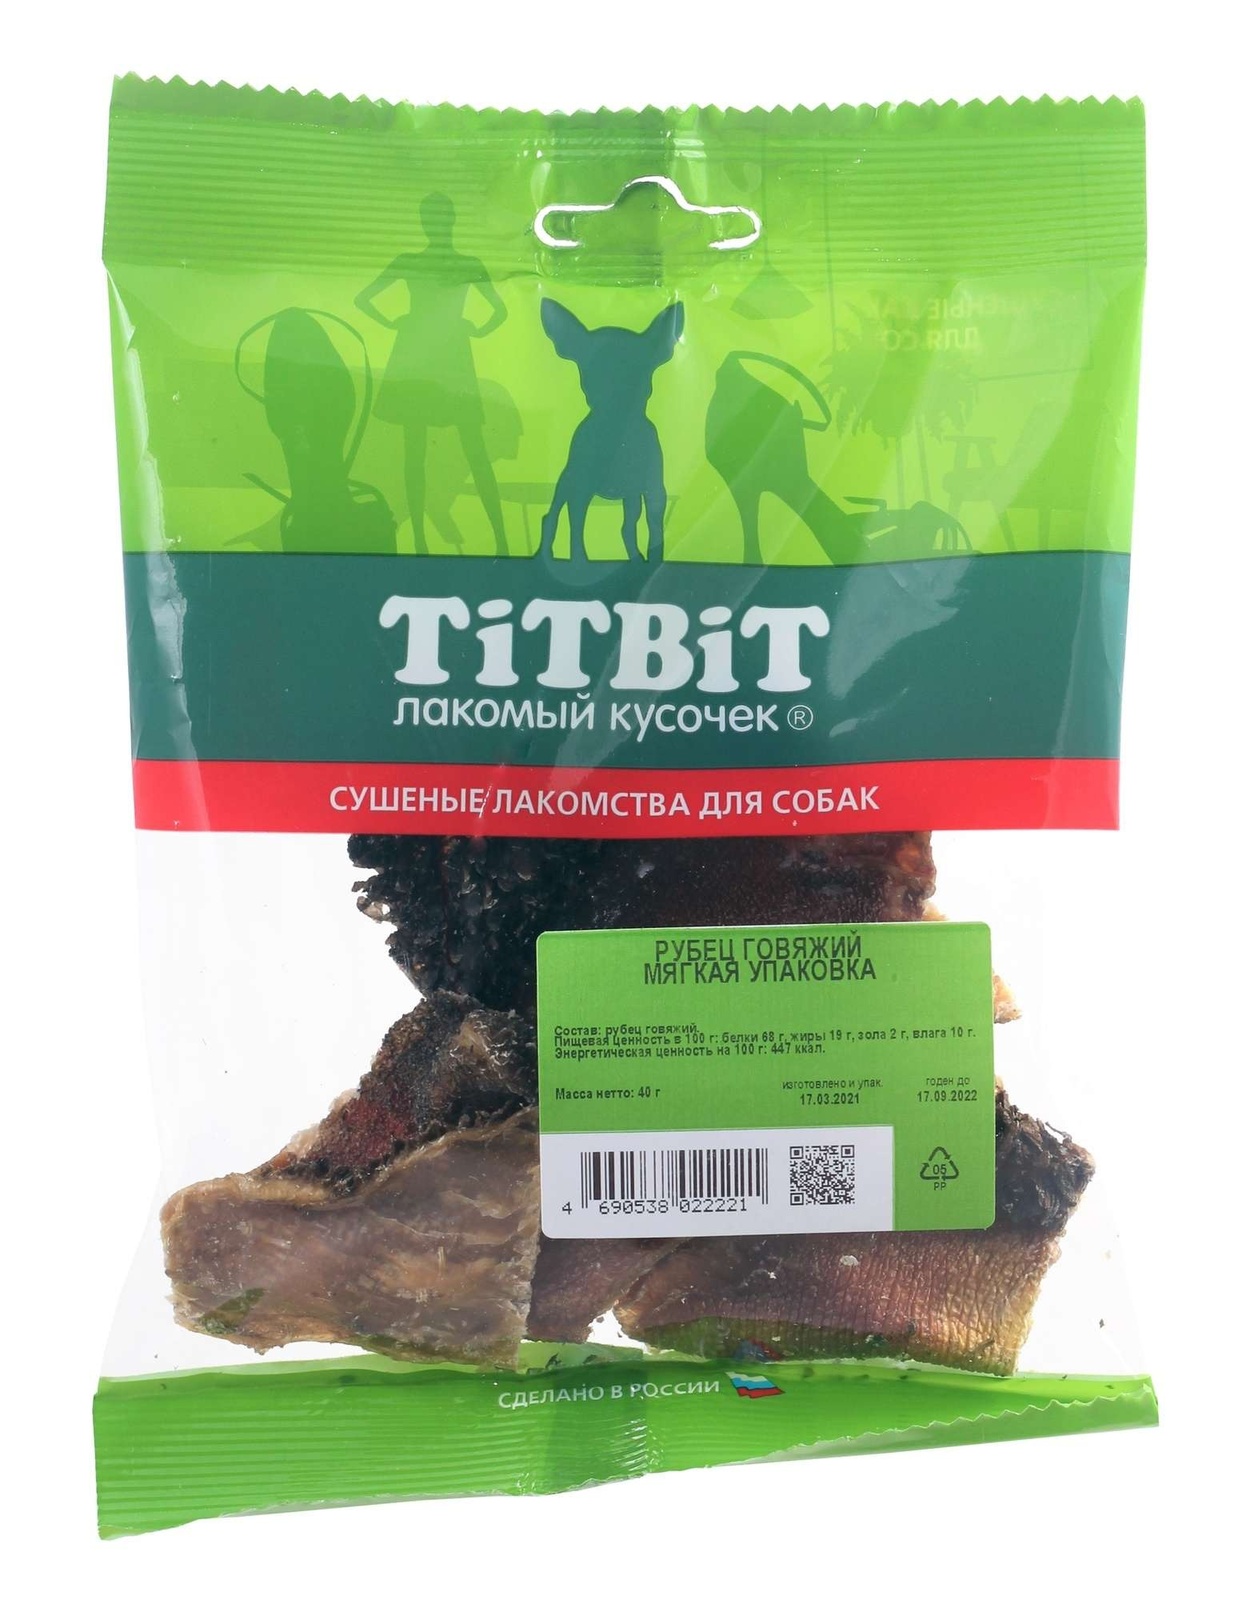 TiTBiT TiTBiT рубец говяжий - мягкая упаковка (40 г) titbit titbit шашлычок говяжий мягкая упаковка 126 г